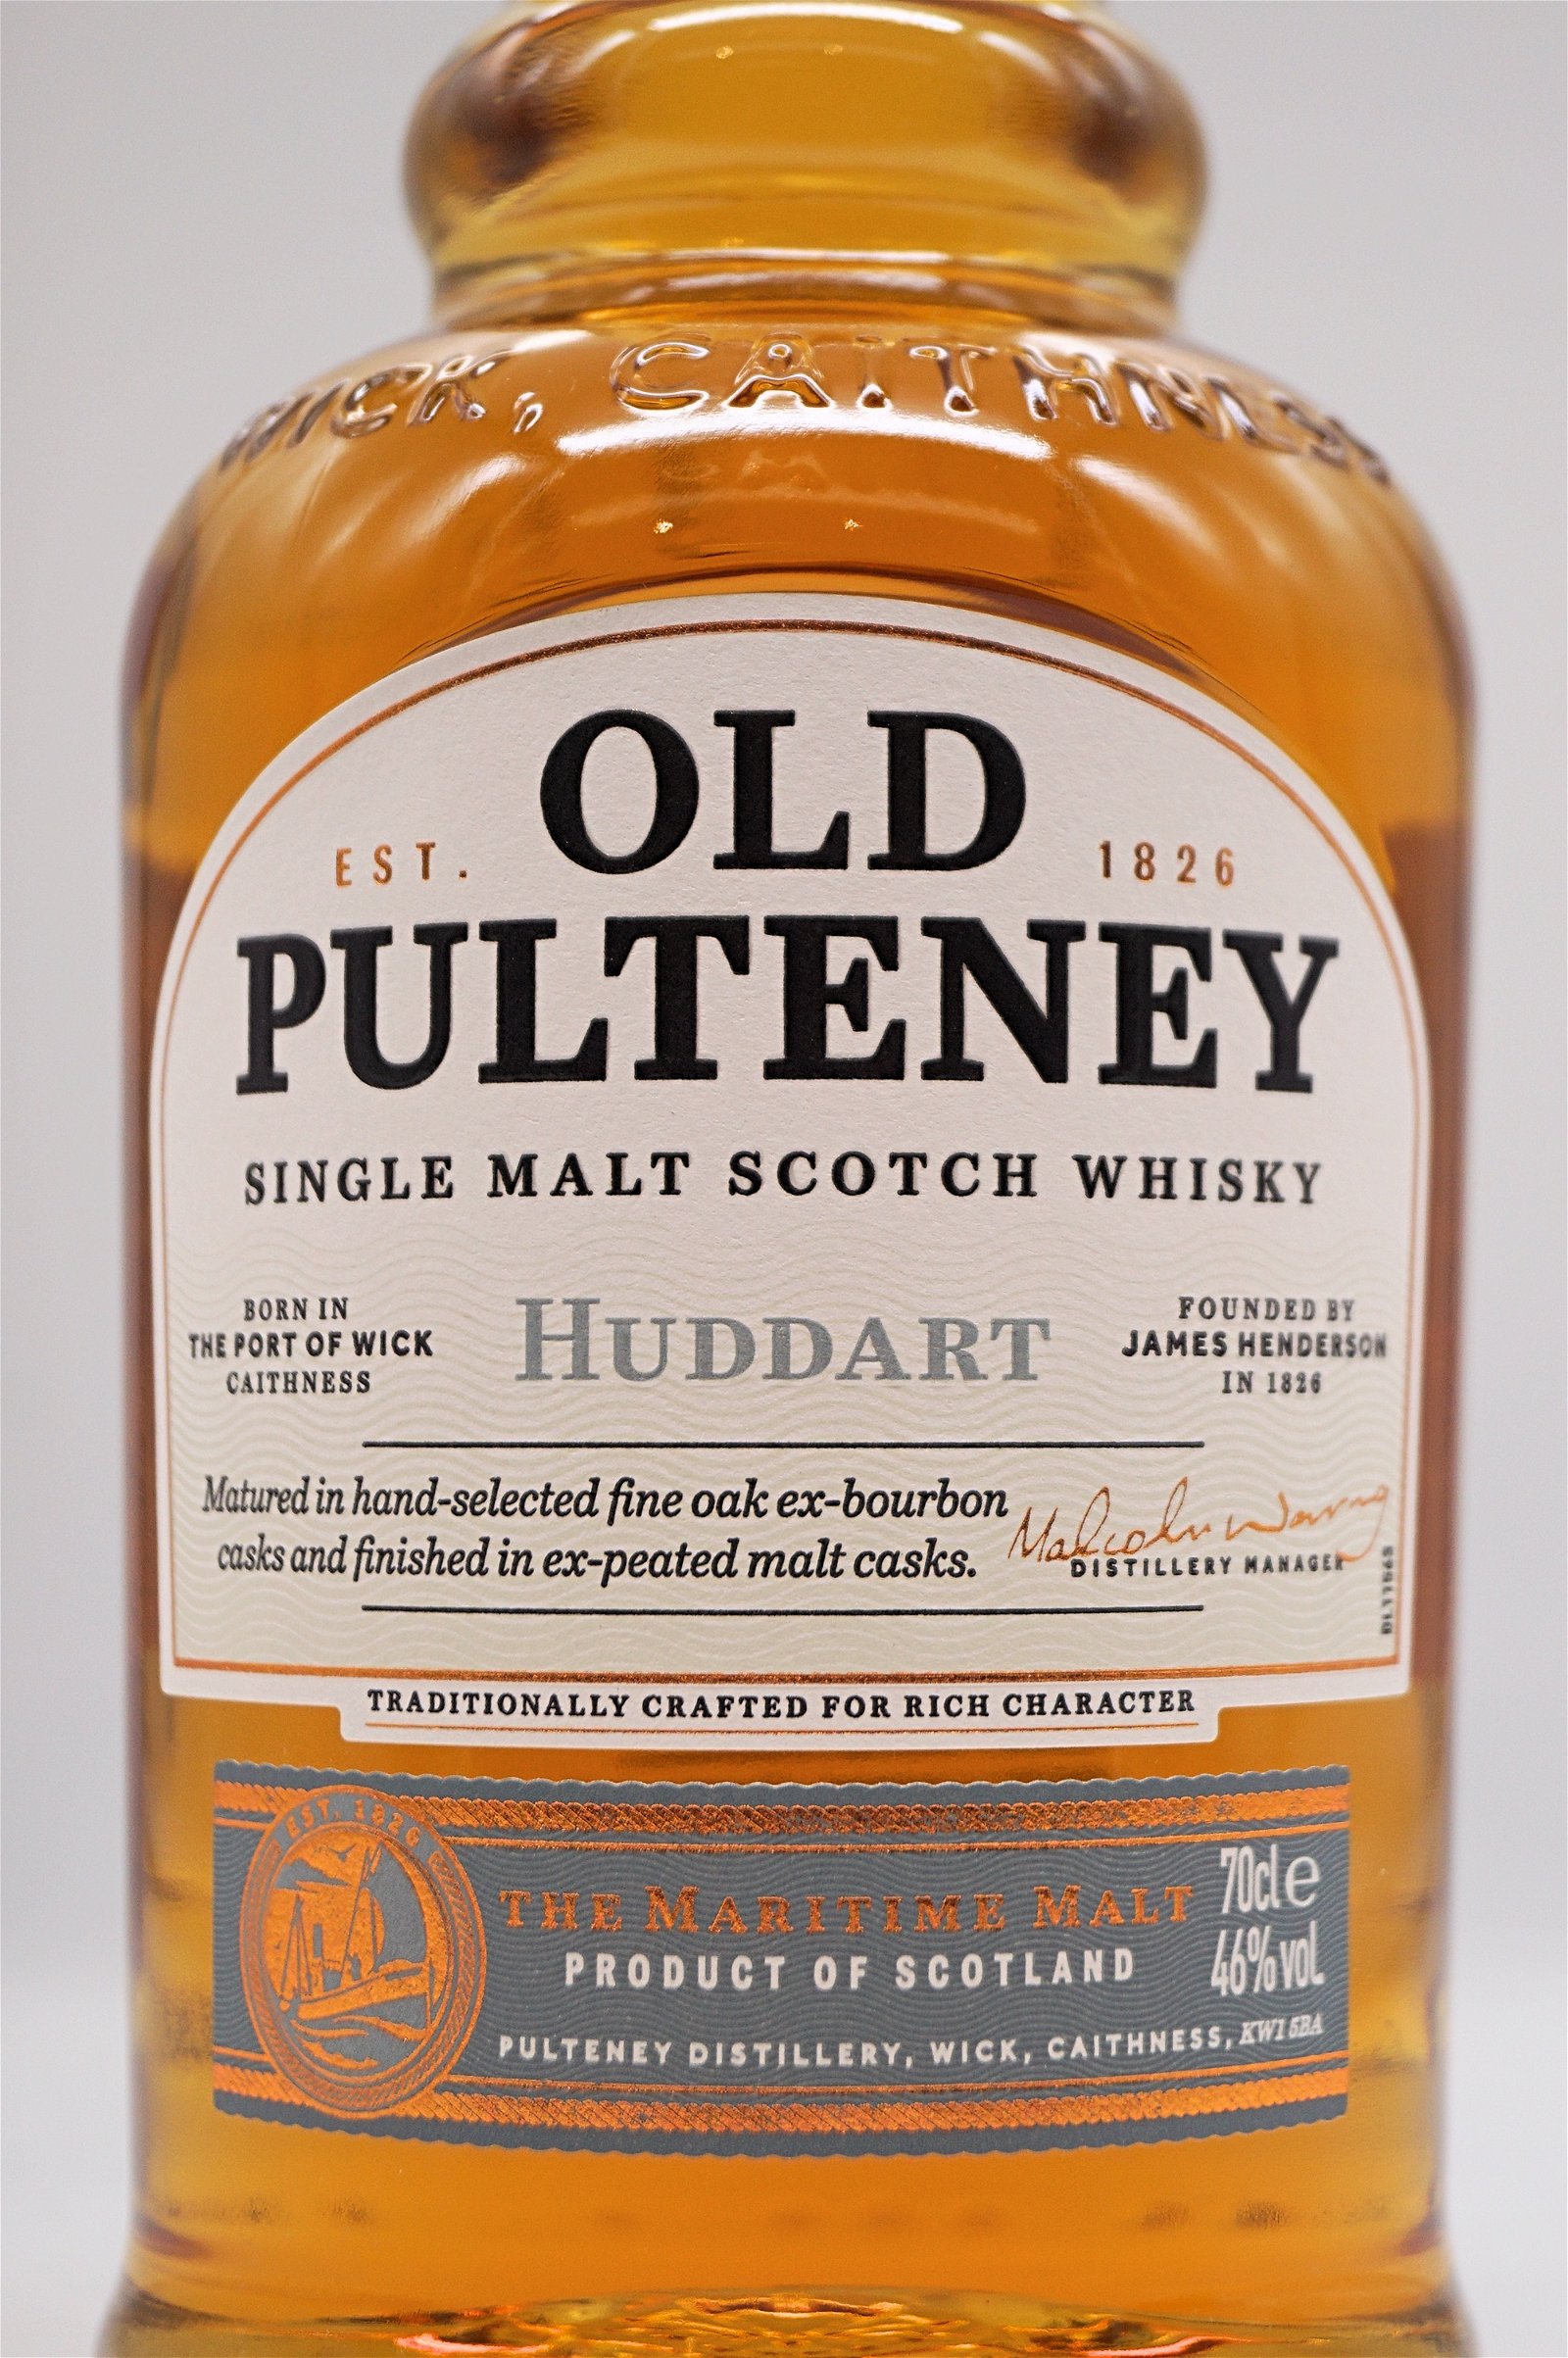 Old Pulteney Huddart Single Malt Scotch Whisky Fine Oak